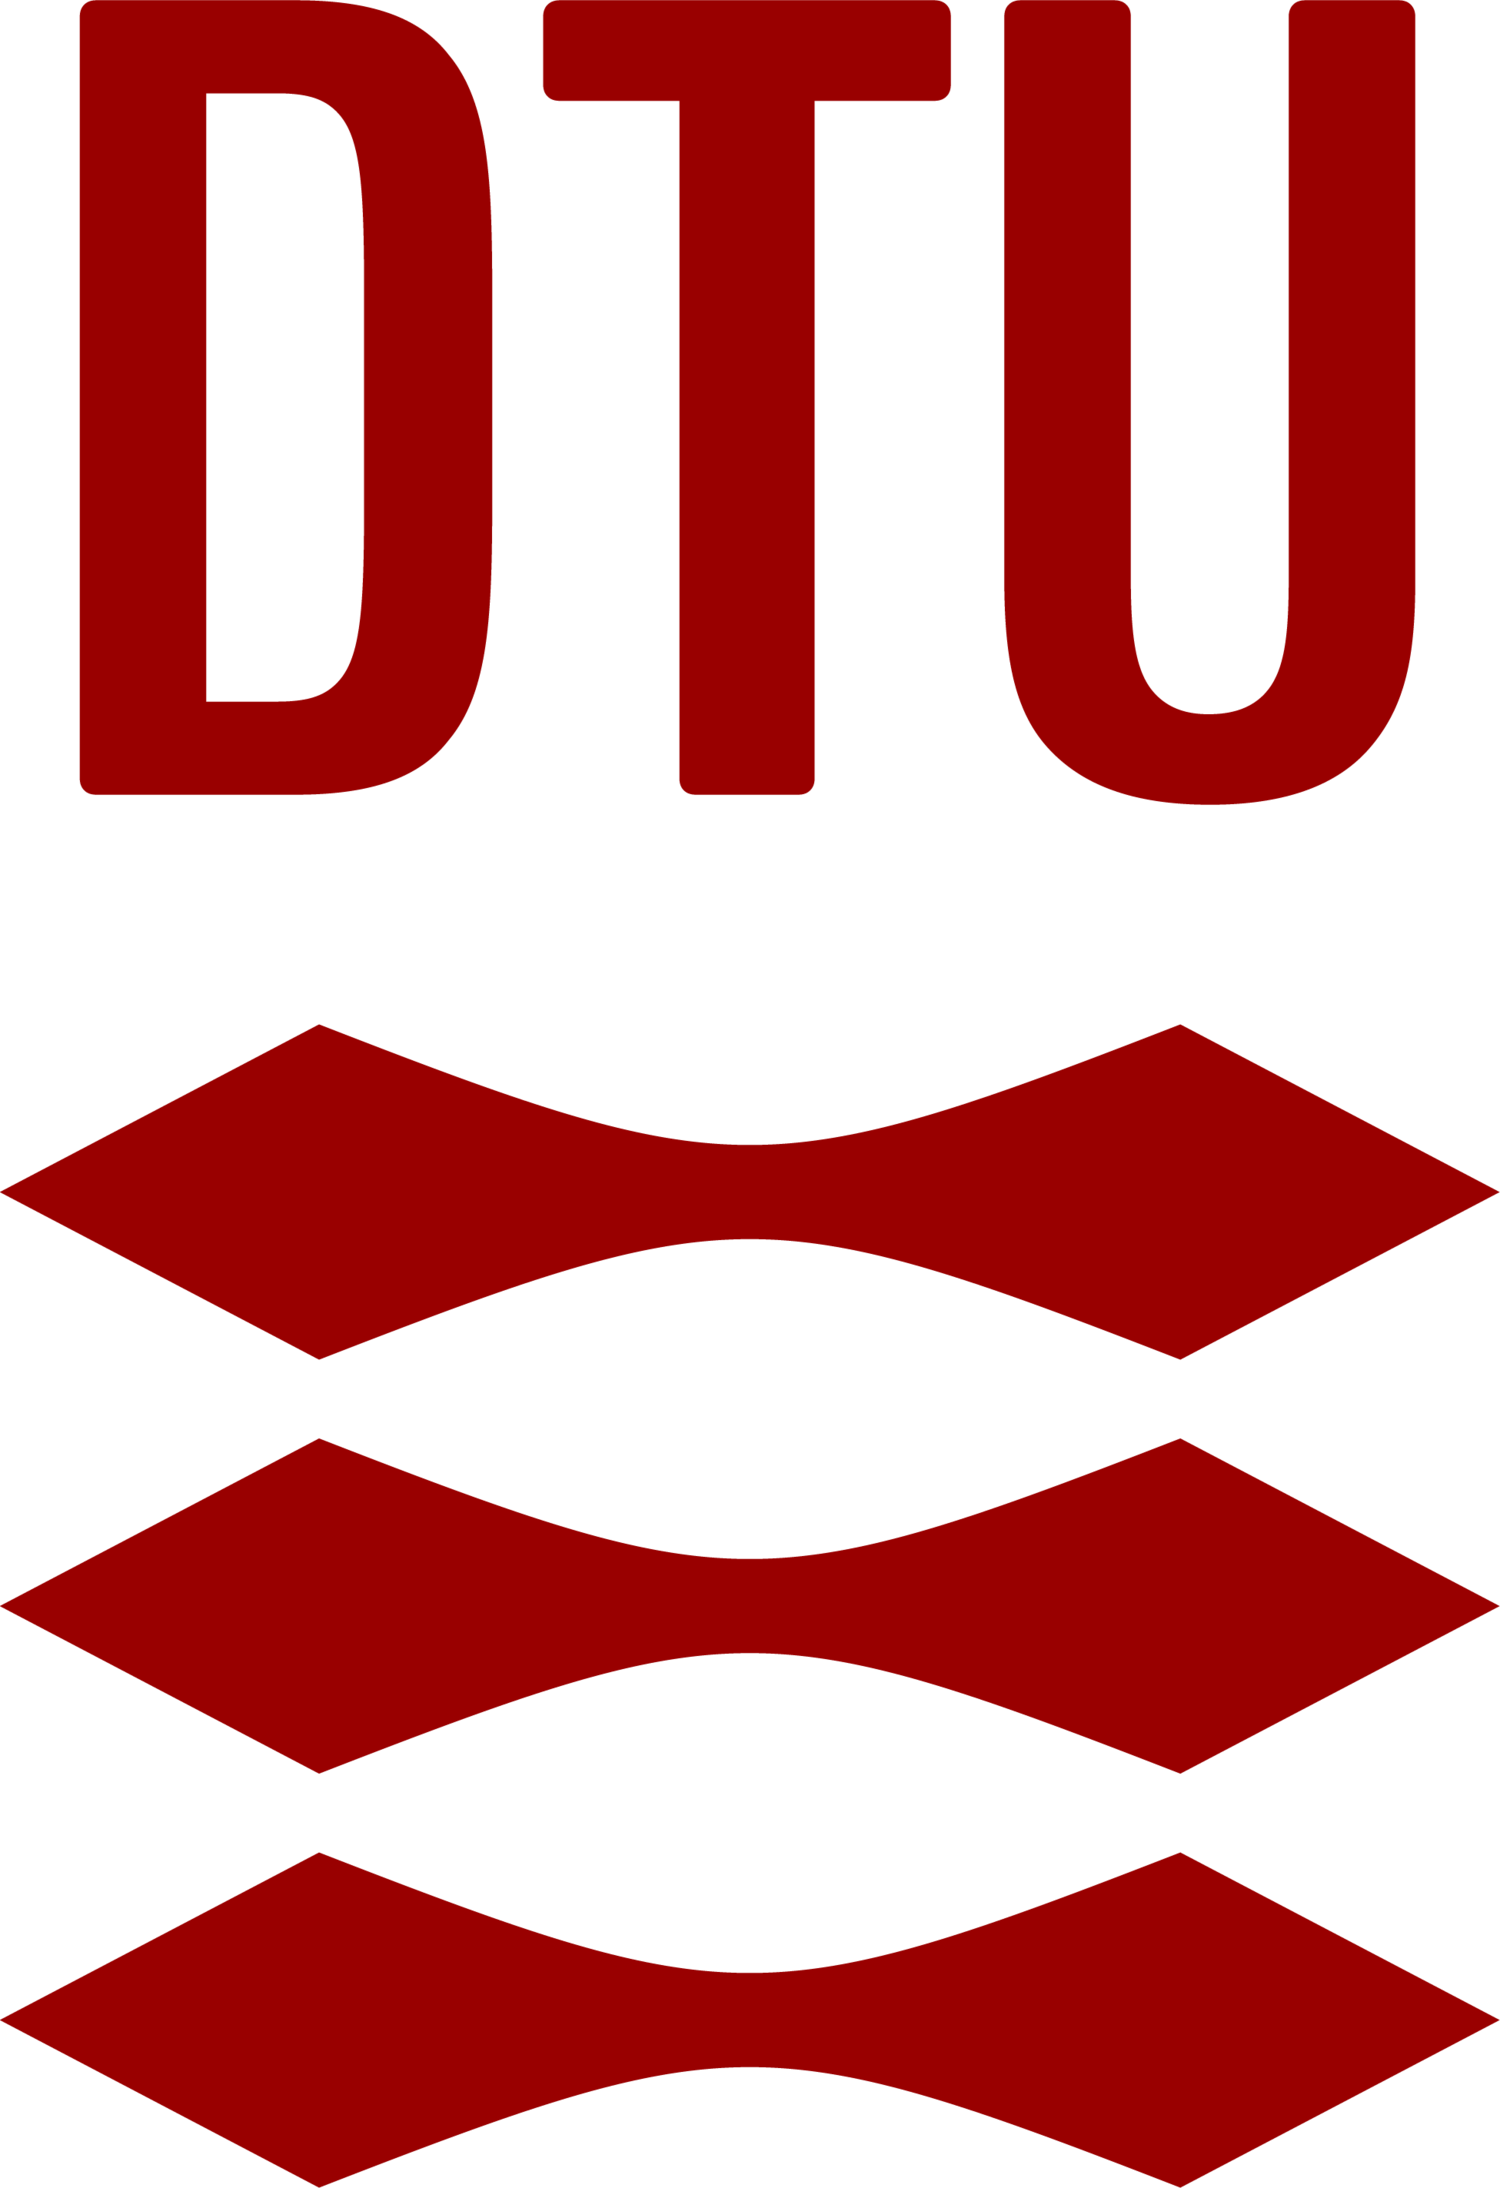 Technical University of Denmark DTU